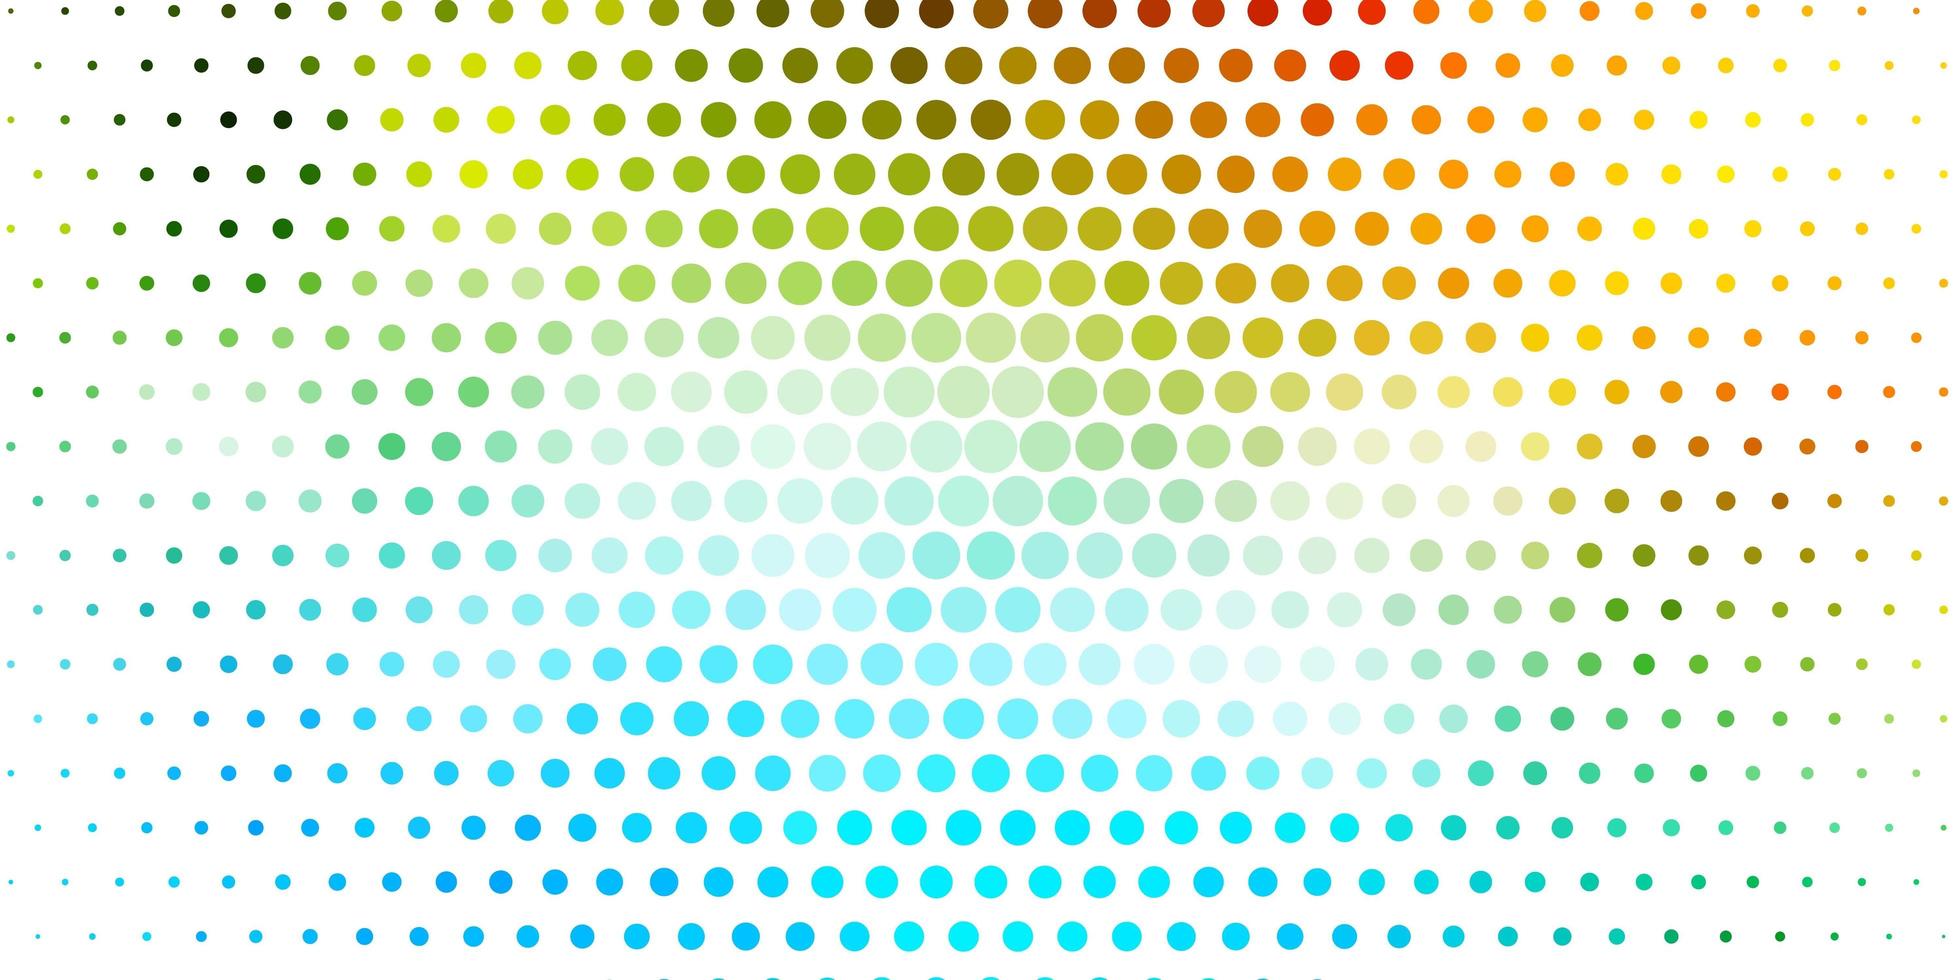 hellblaues, grünes Vektorlayout mit Kreisformen. abstrakte bunte Scheiben auf einfachem Hintergrund mit Farbverlauf. Muster für Tapeten, Vorhänge. vektor